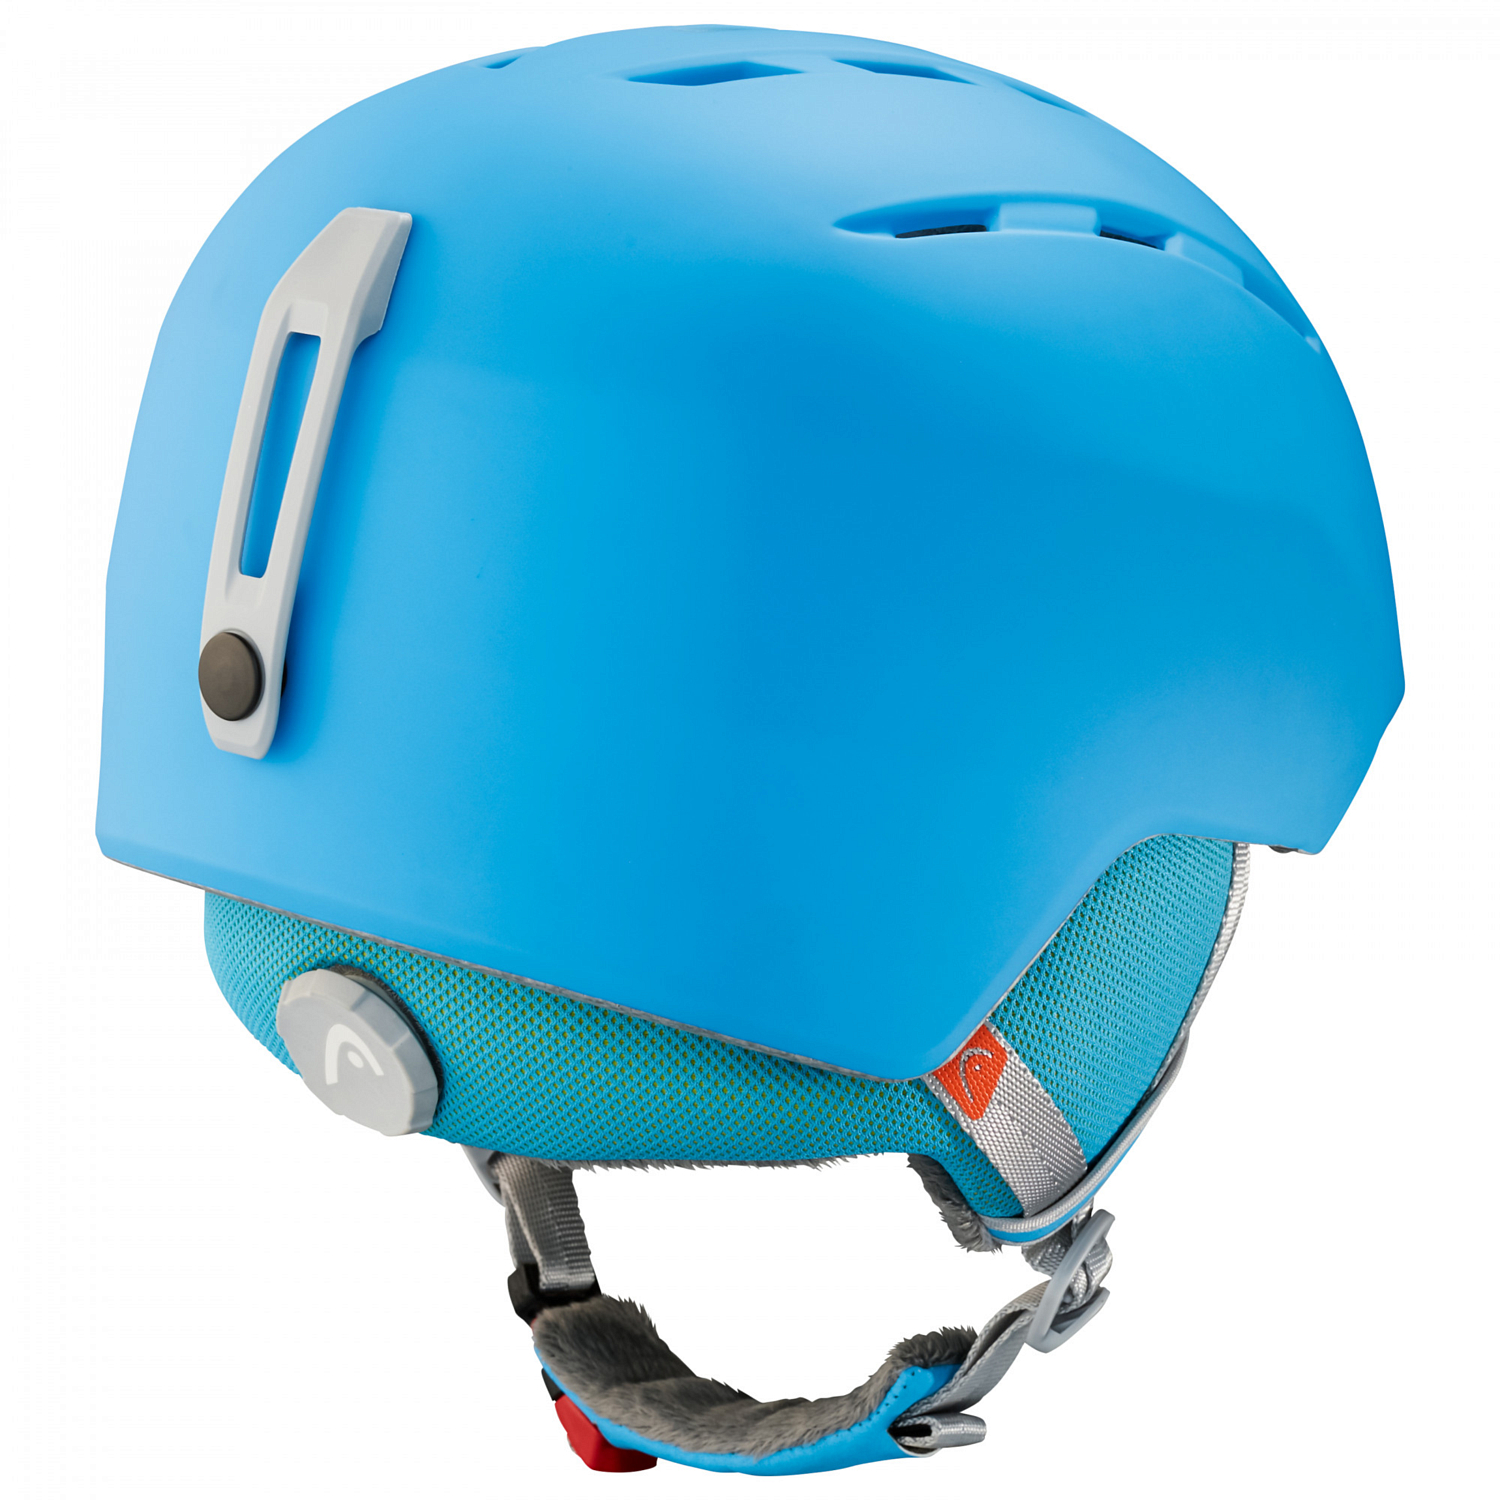 Зимний Шлем HEAD 2019-20 Vico Space Blue